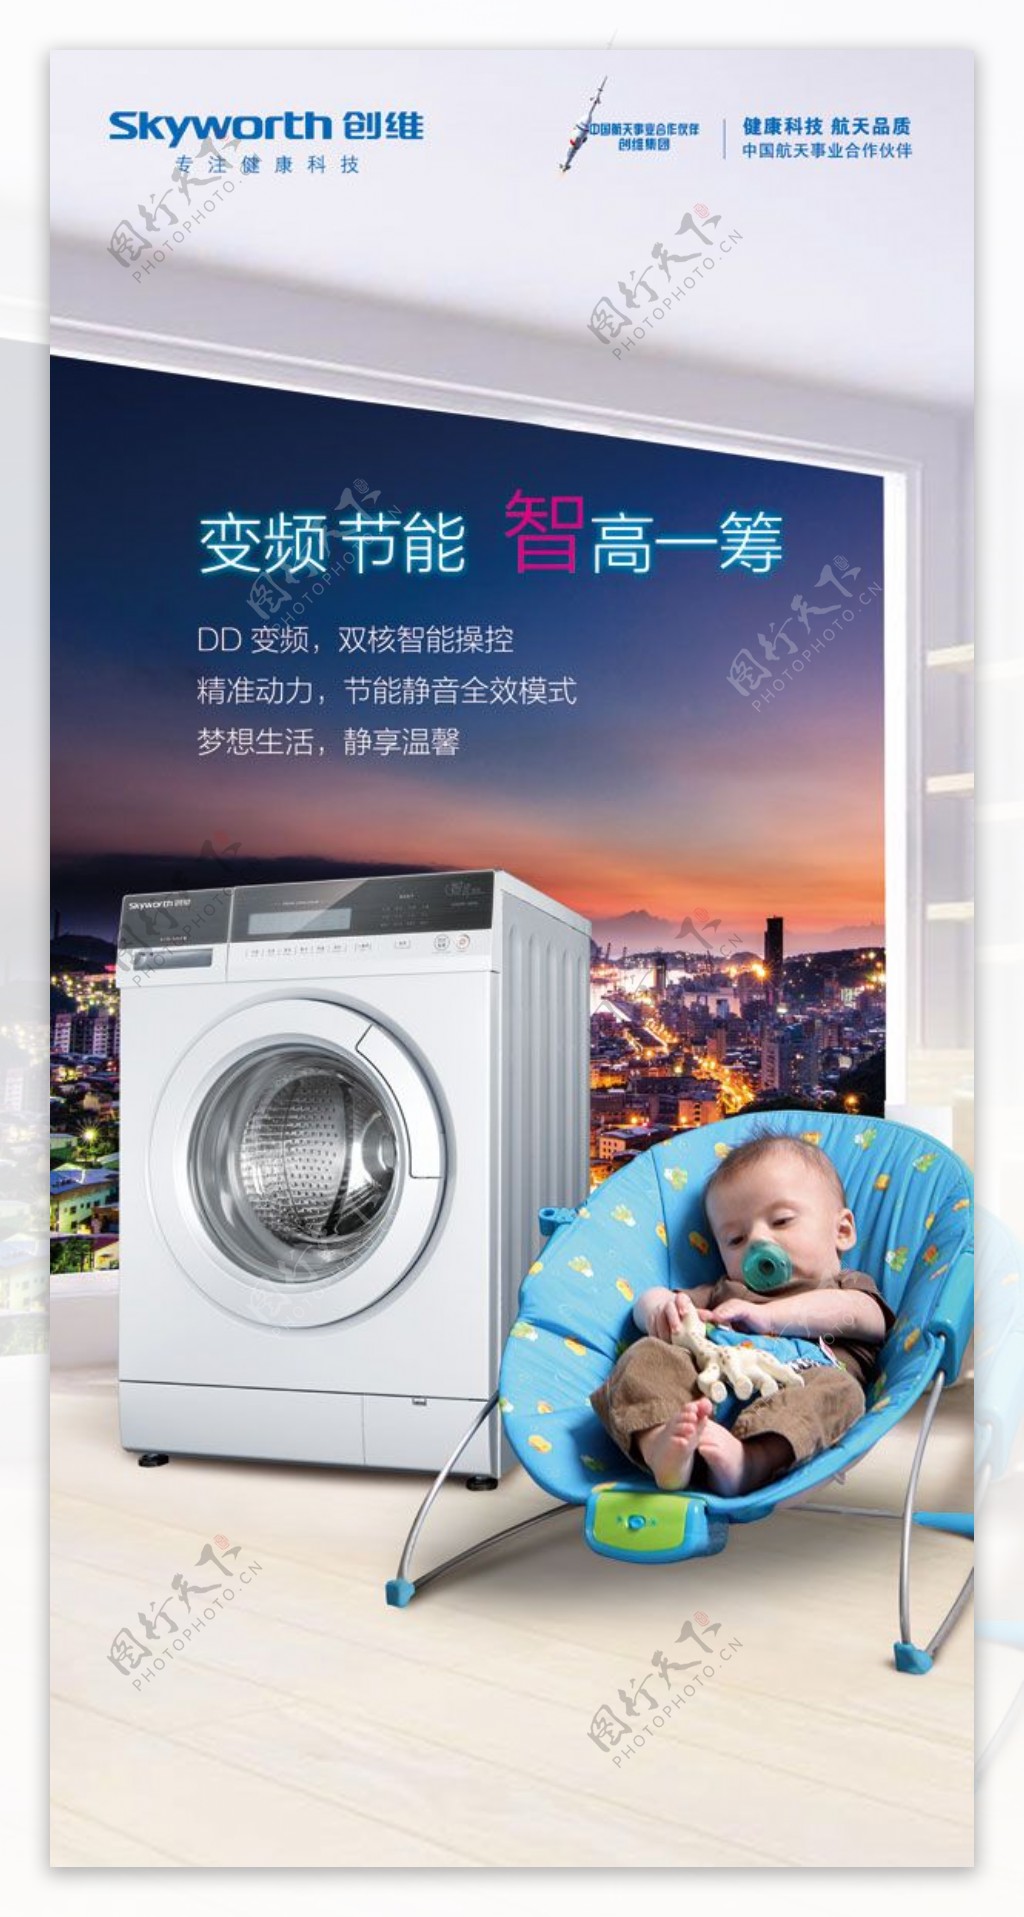 洗衣机促销展架PSD分层素材